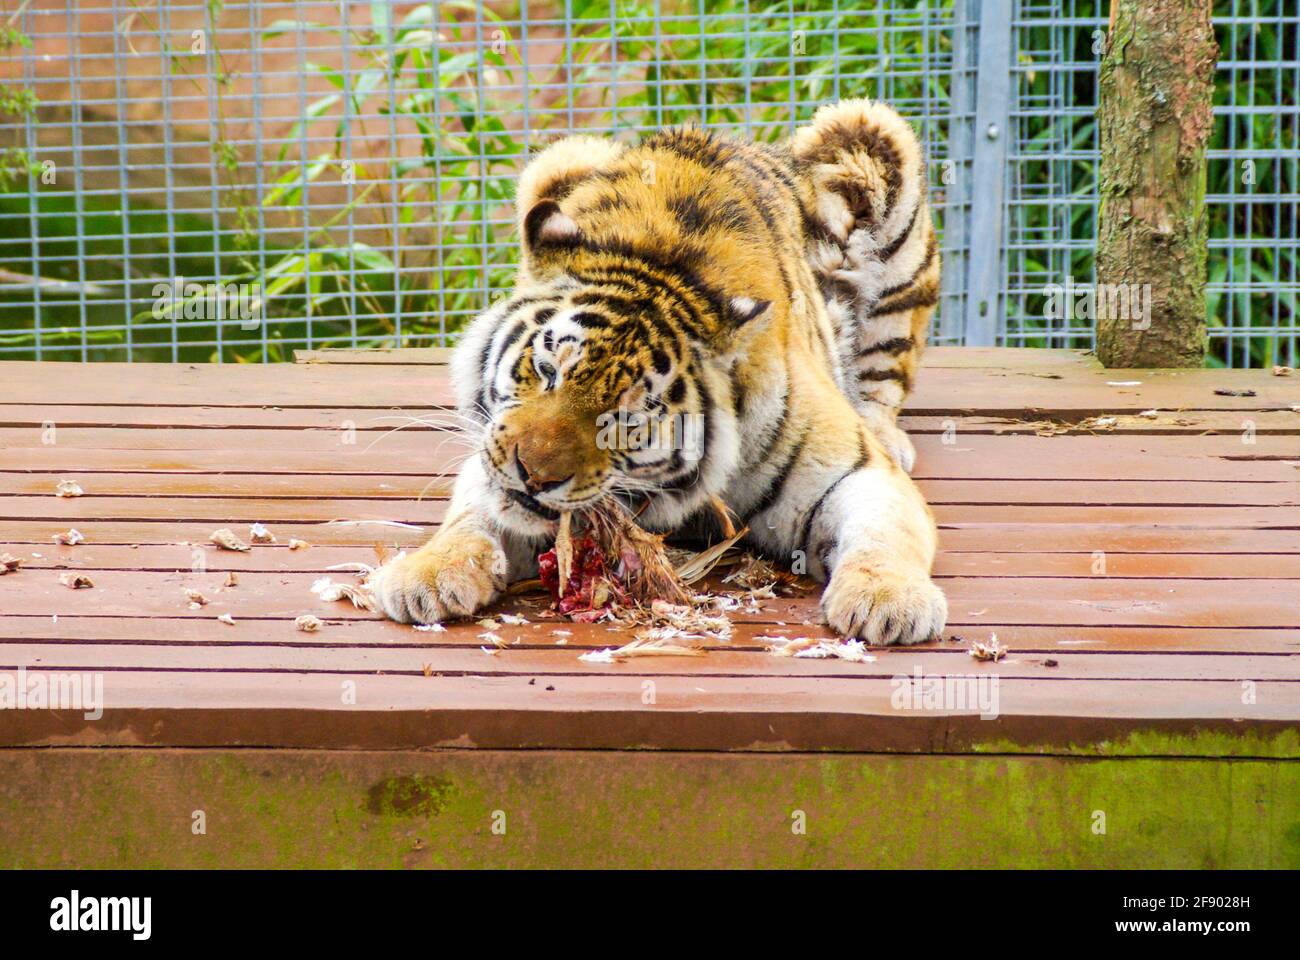 Tiger au zoo de South Lakes Safari, anciennement Parc animalier de South Lakes. En 2013, un tigre mauvait un employé du zoo. Temps d'alimentation. Manger de la nourriture Banque D'Images